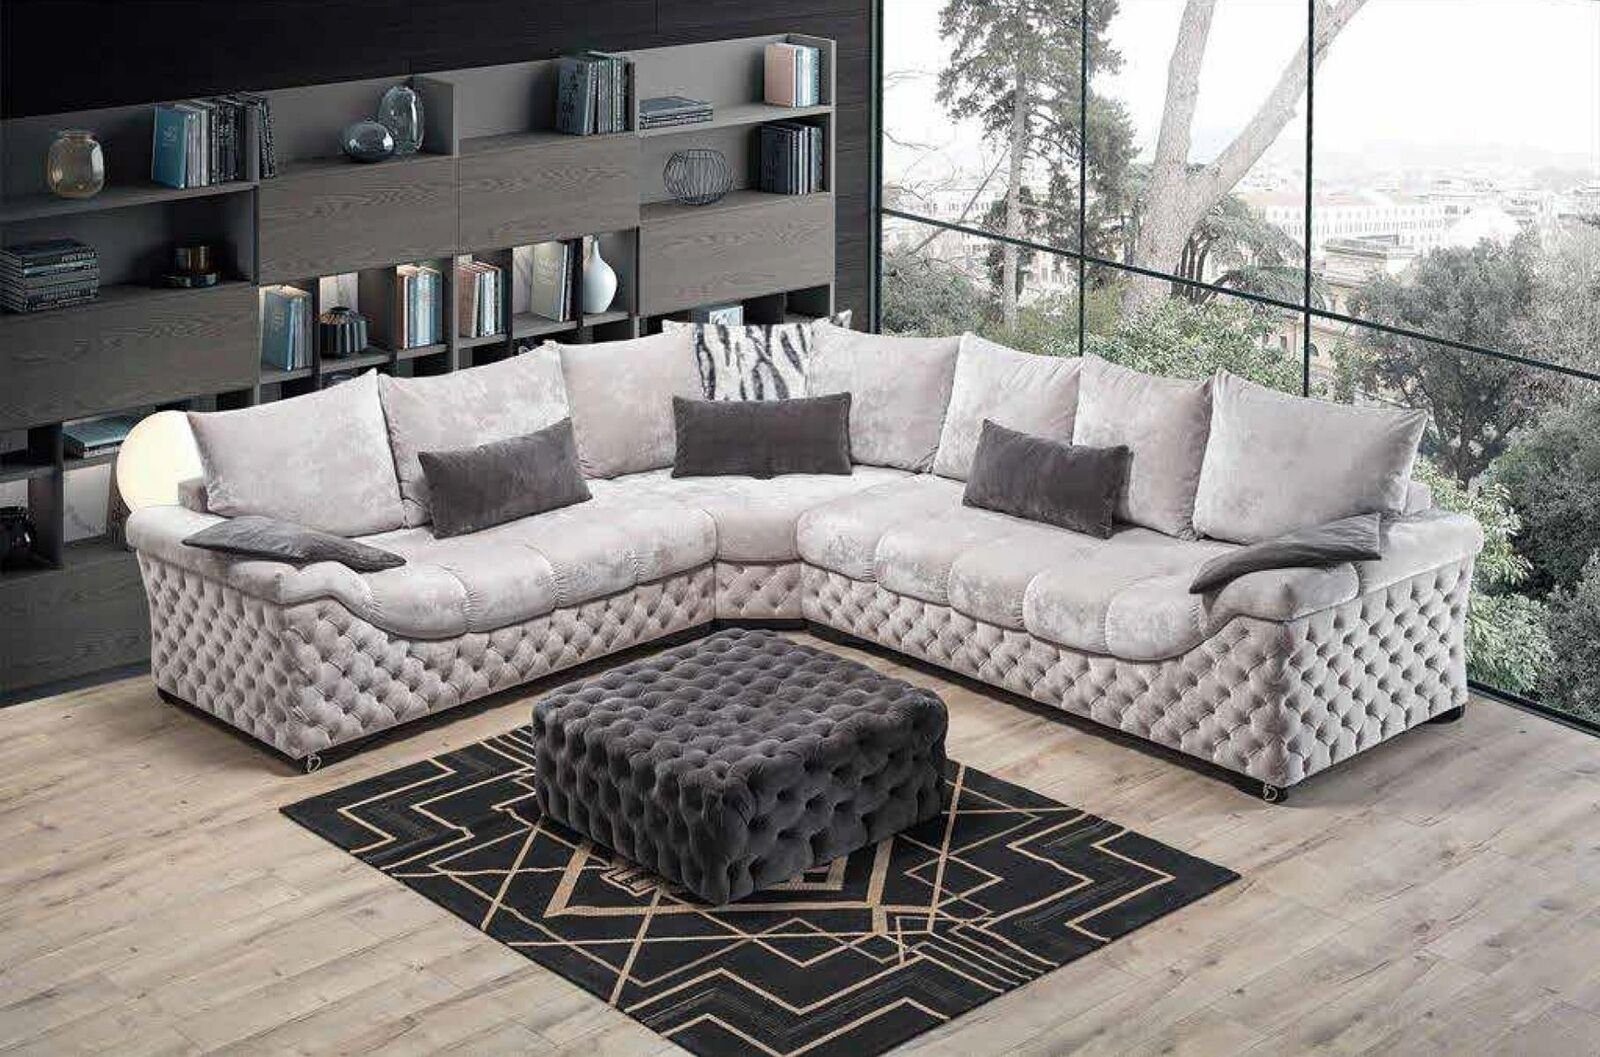 JVmoebel Ecksofa Ecksofa Beige Wohnzimmer mit Textil Design Holz Form, in Couch L Made Italy